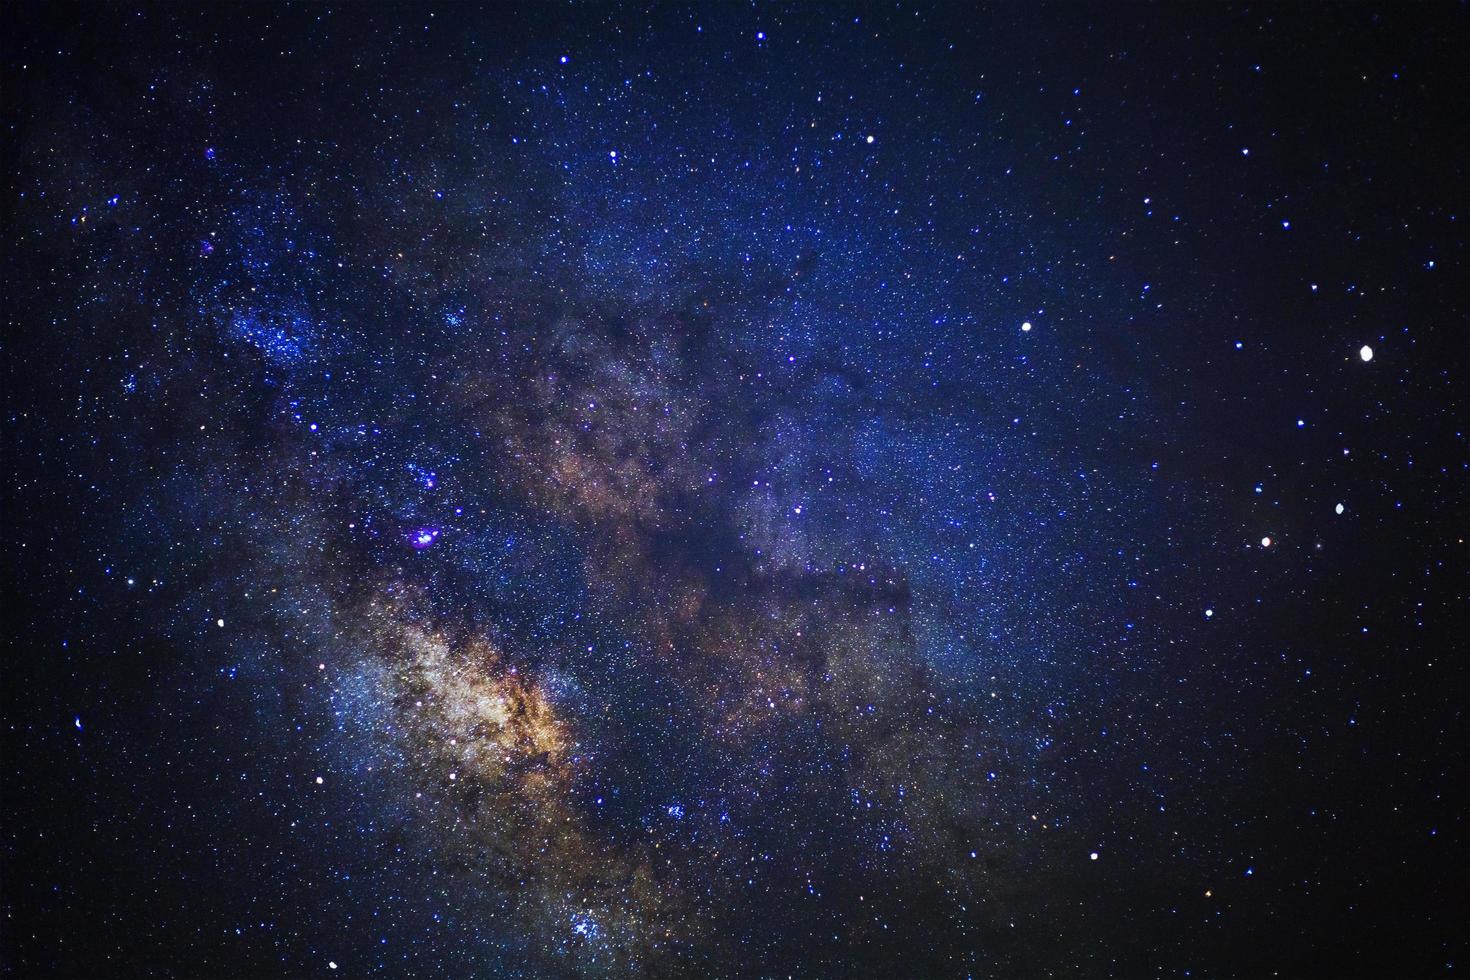 céu noturno estrelado e galáxia da via láctea com estrelas e poeira espacial no universo foto